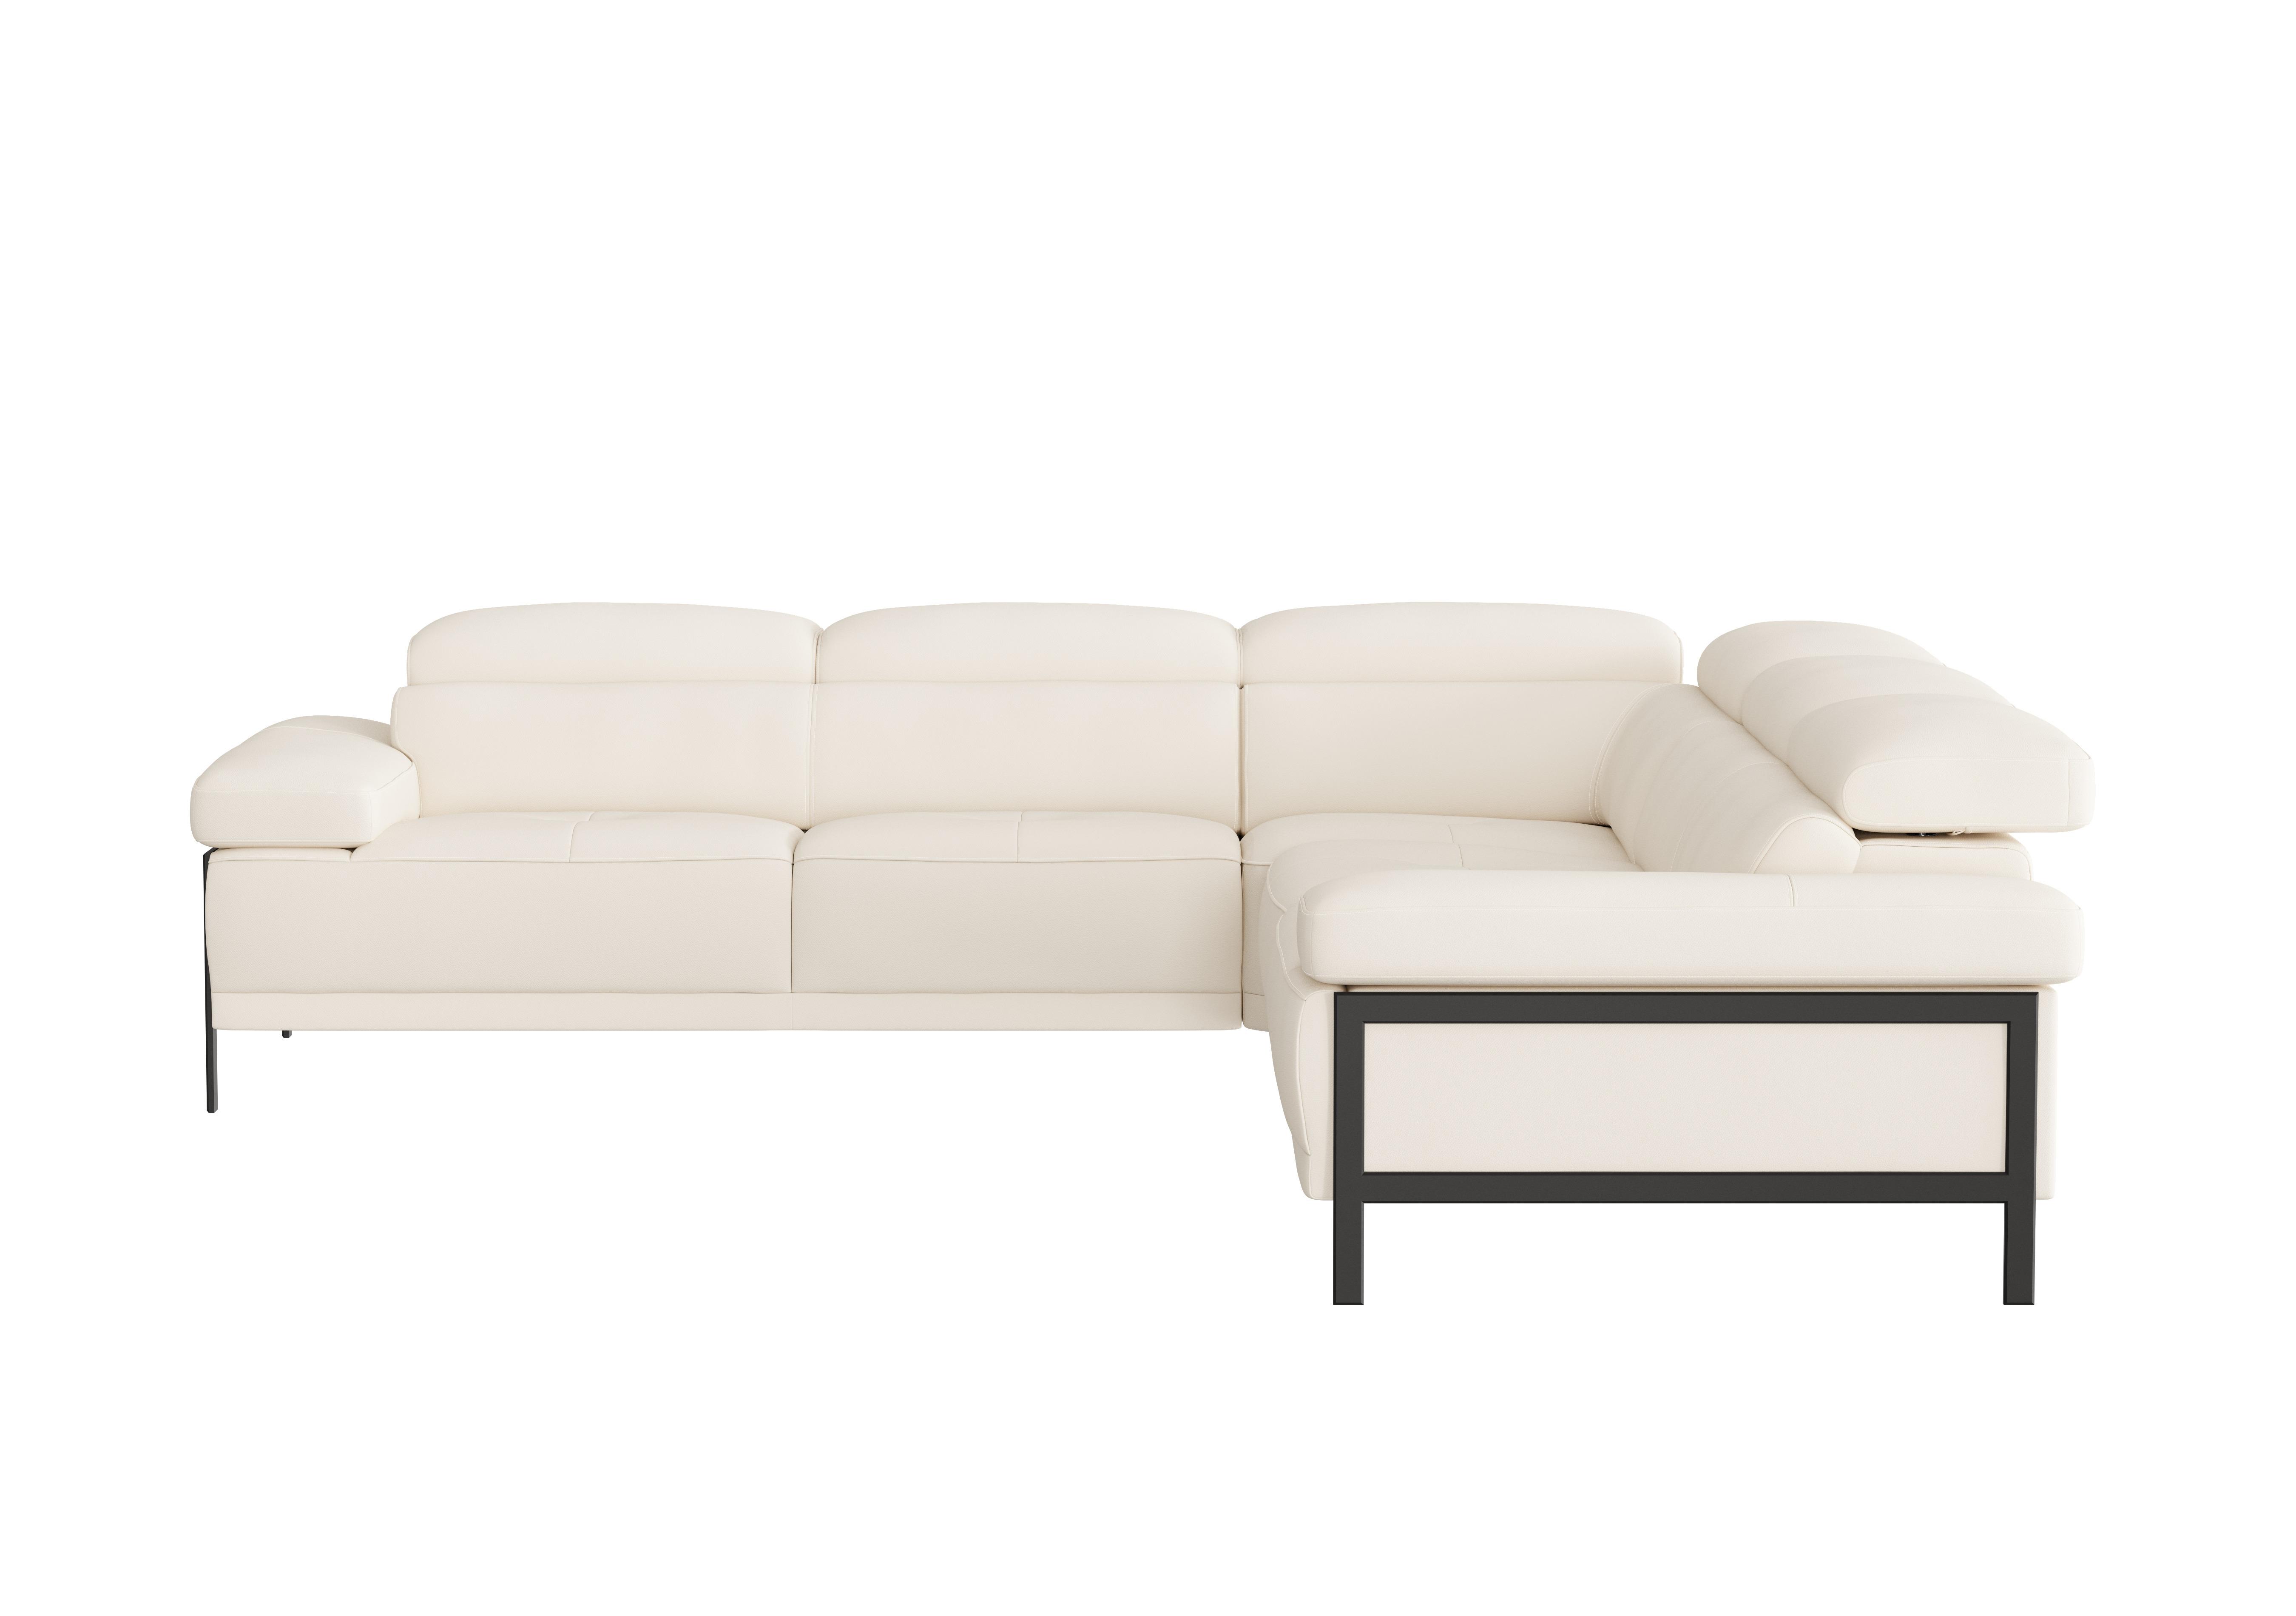 Theron Large Leather Corner Sofa in Torello Bianco 93 Ti Ft on Furniture Village